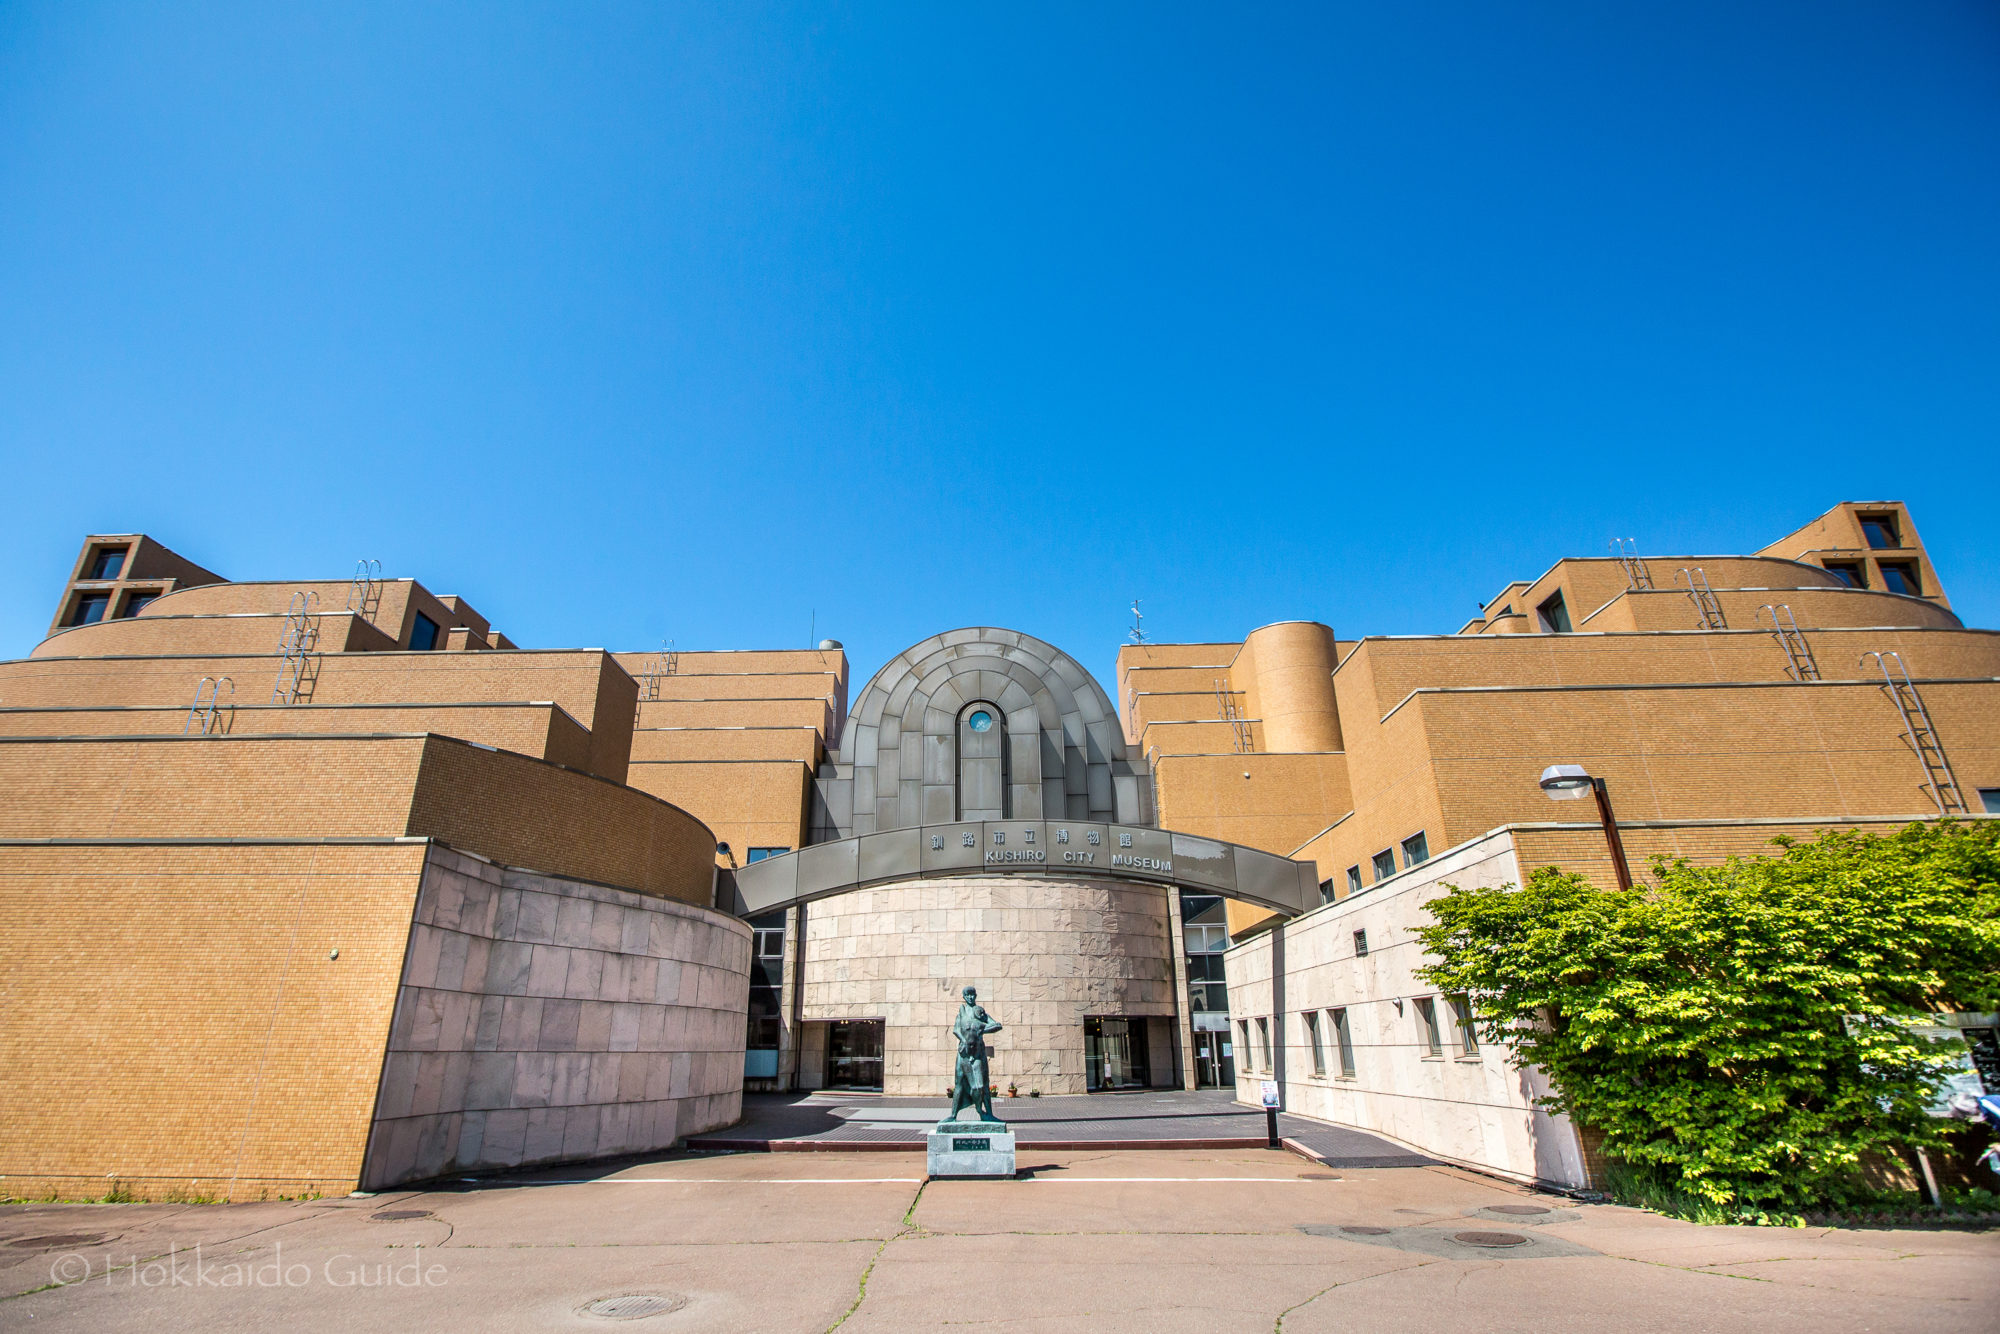 釧路市立博物館